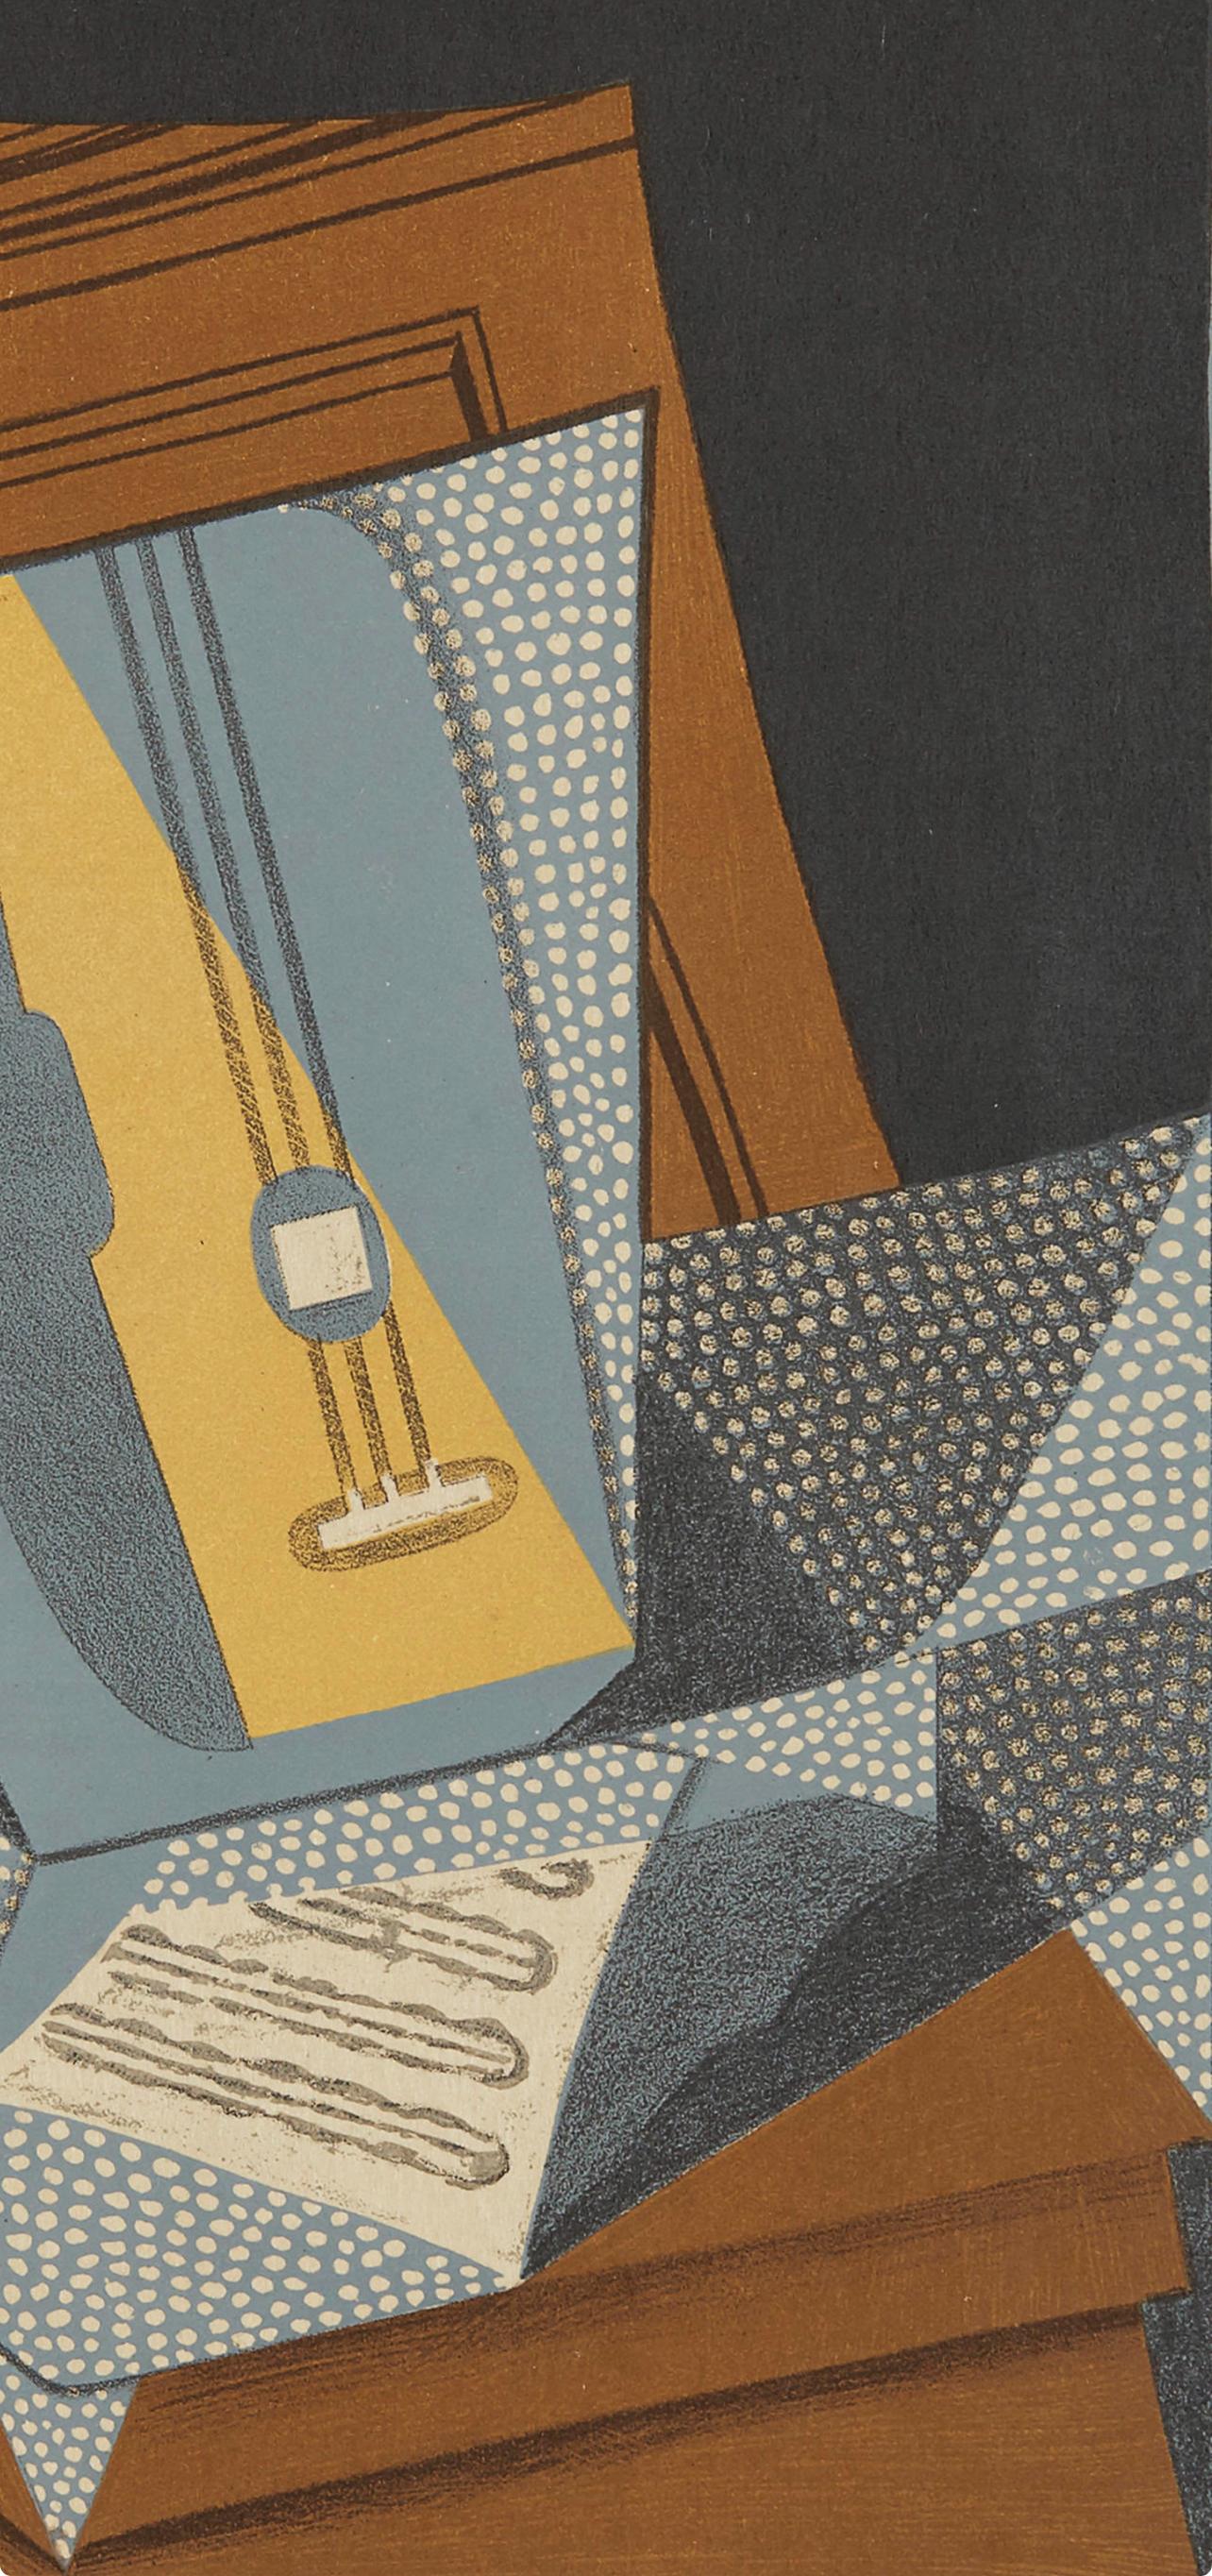 Gris, Guitare (Kahnweiler 1969), Au Soleil du Plafond (après) - Print de Juan Gris